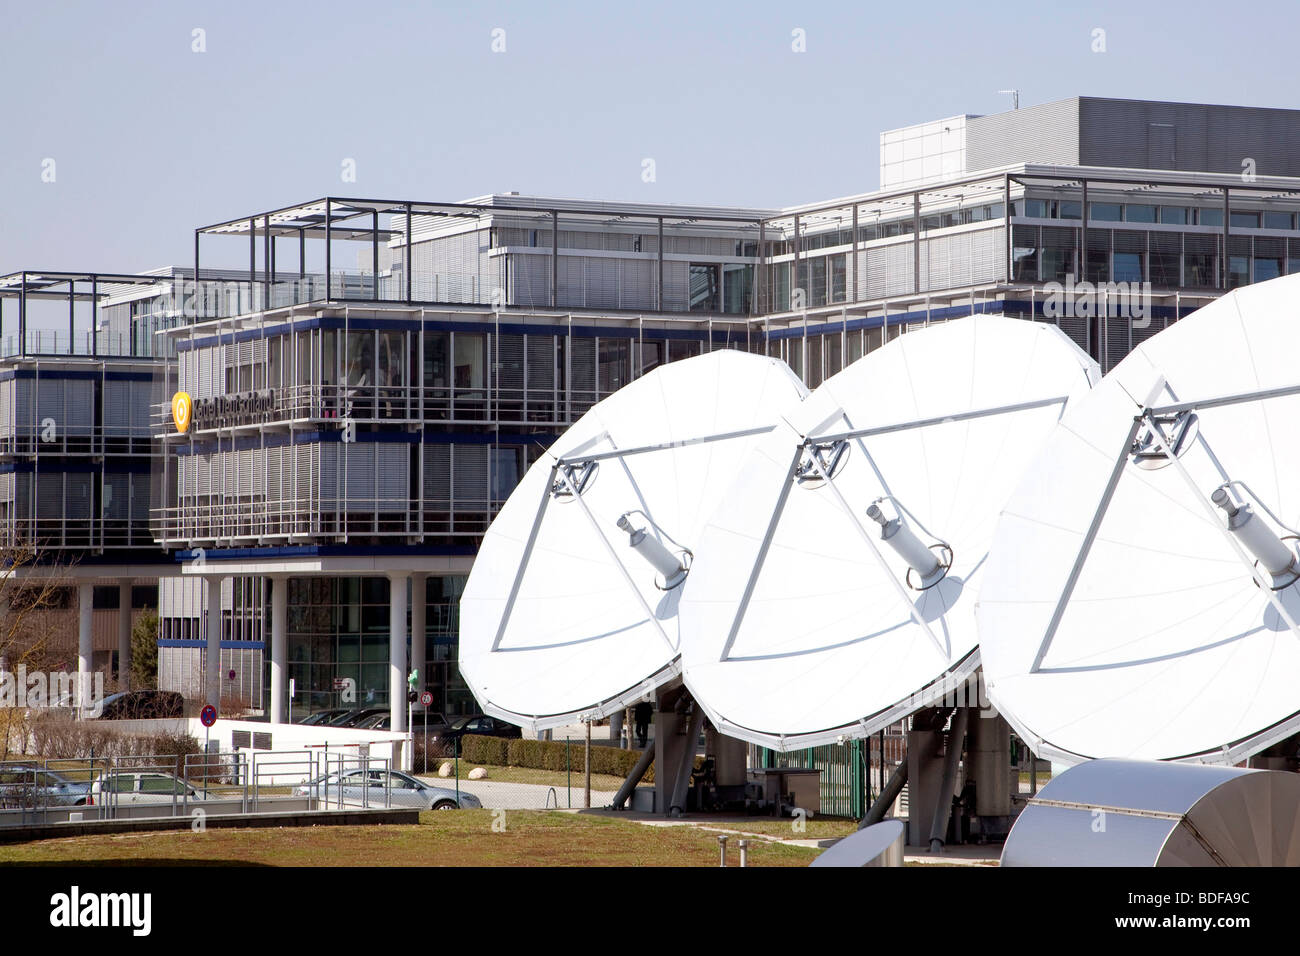 Kabel Deutschland company, antennes satellites dans Unterfoehring situé près de Munich, Bavaria, Germany, Europe Banque D'Images